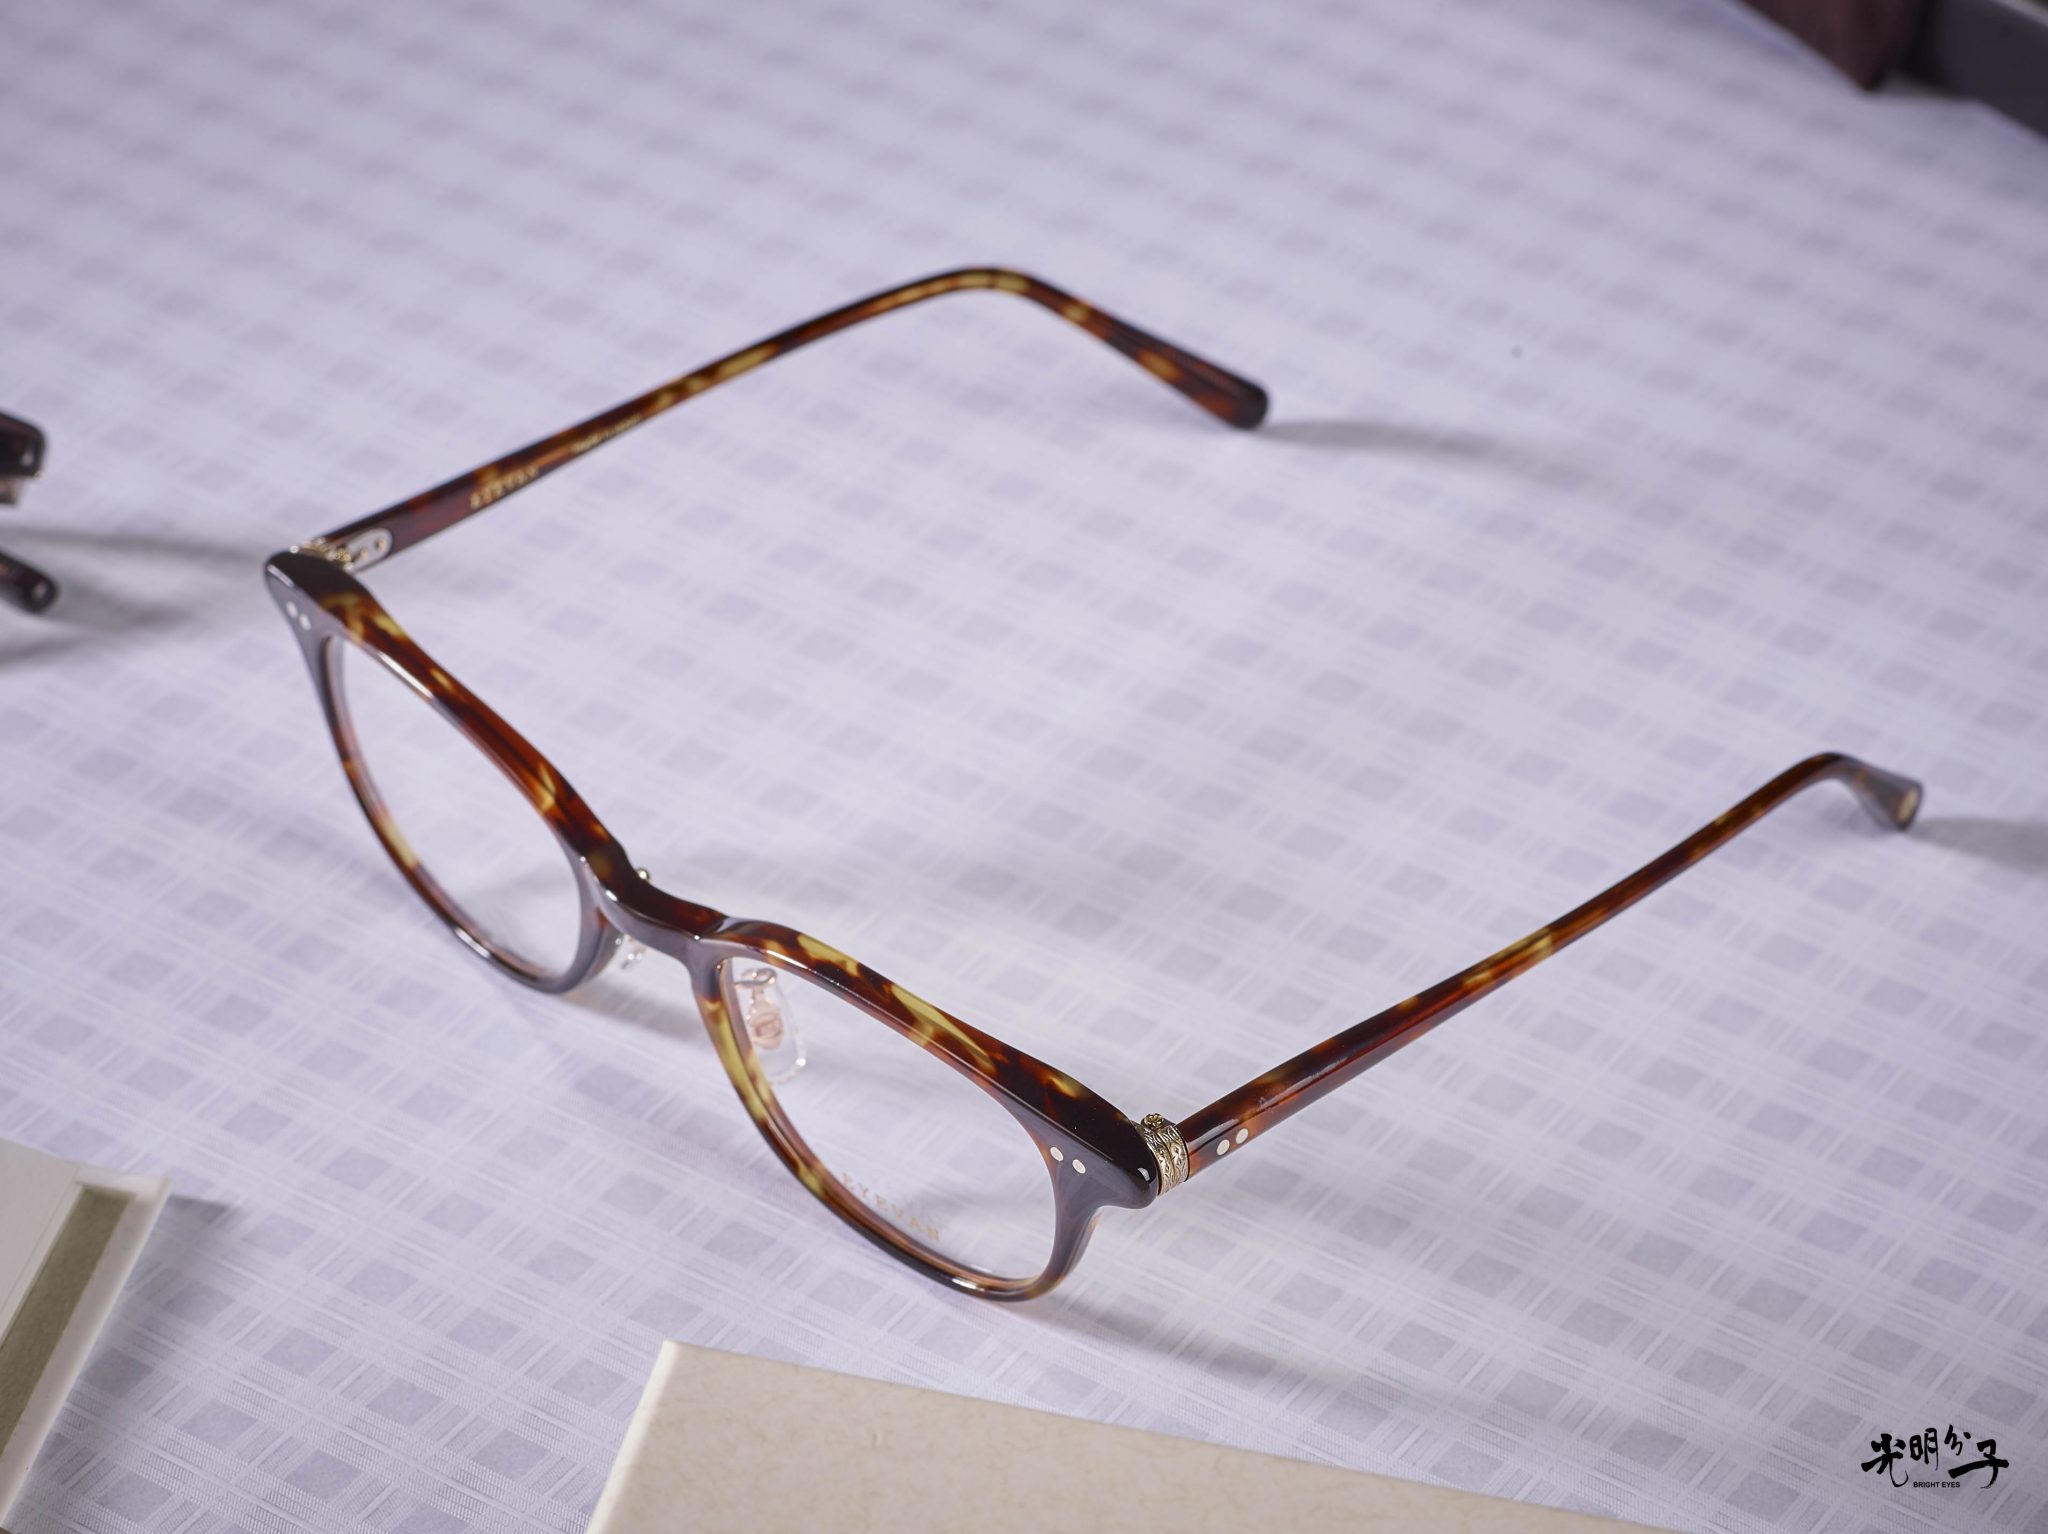 【開箱】EYEVAN 7285・復古與時尚交織的優雅－光明分子．眼鏡